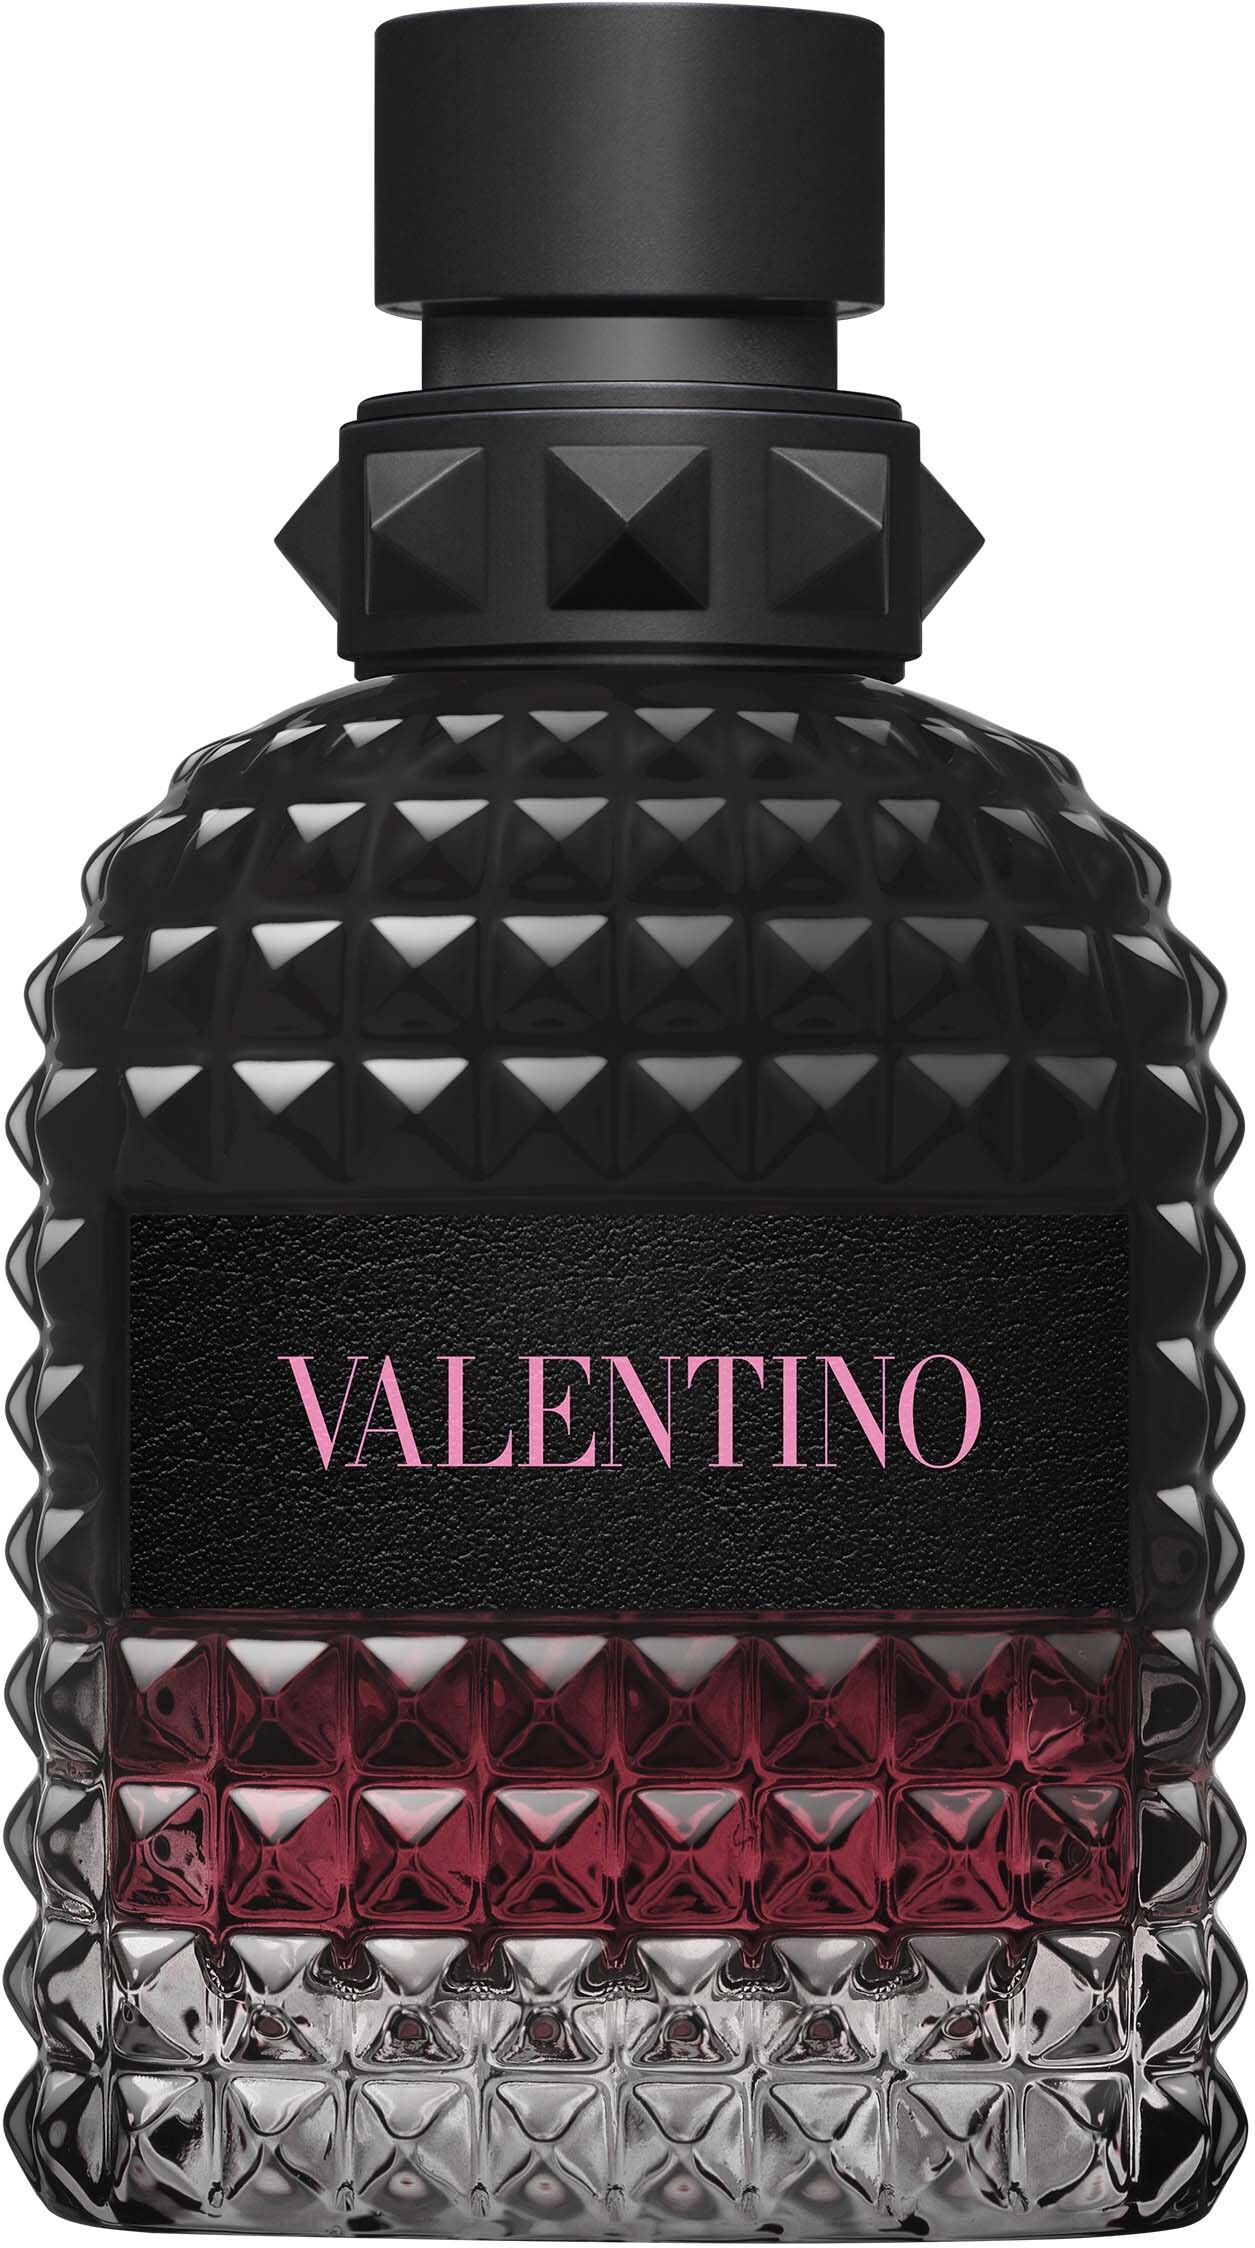 Valentino Born In Roma Uomo Intense Eau de Parfum 50 ml